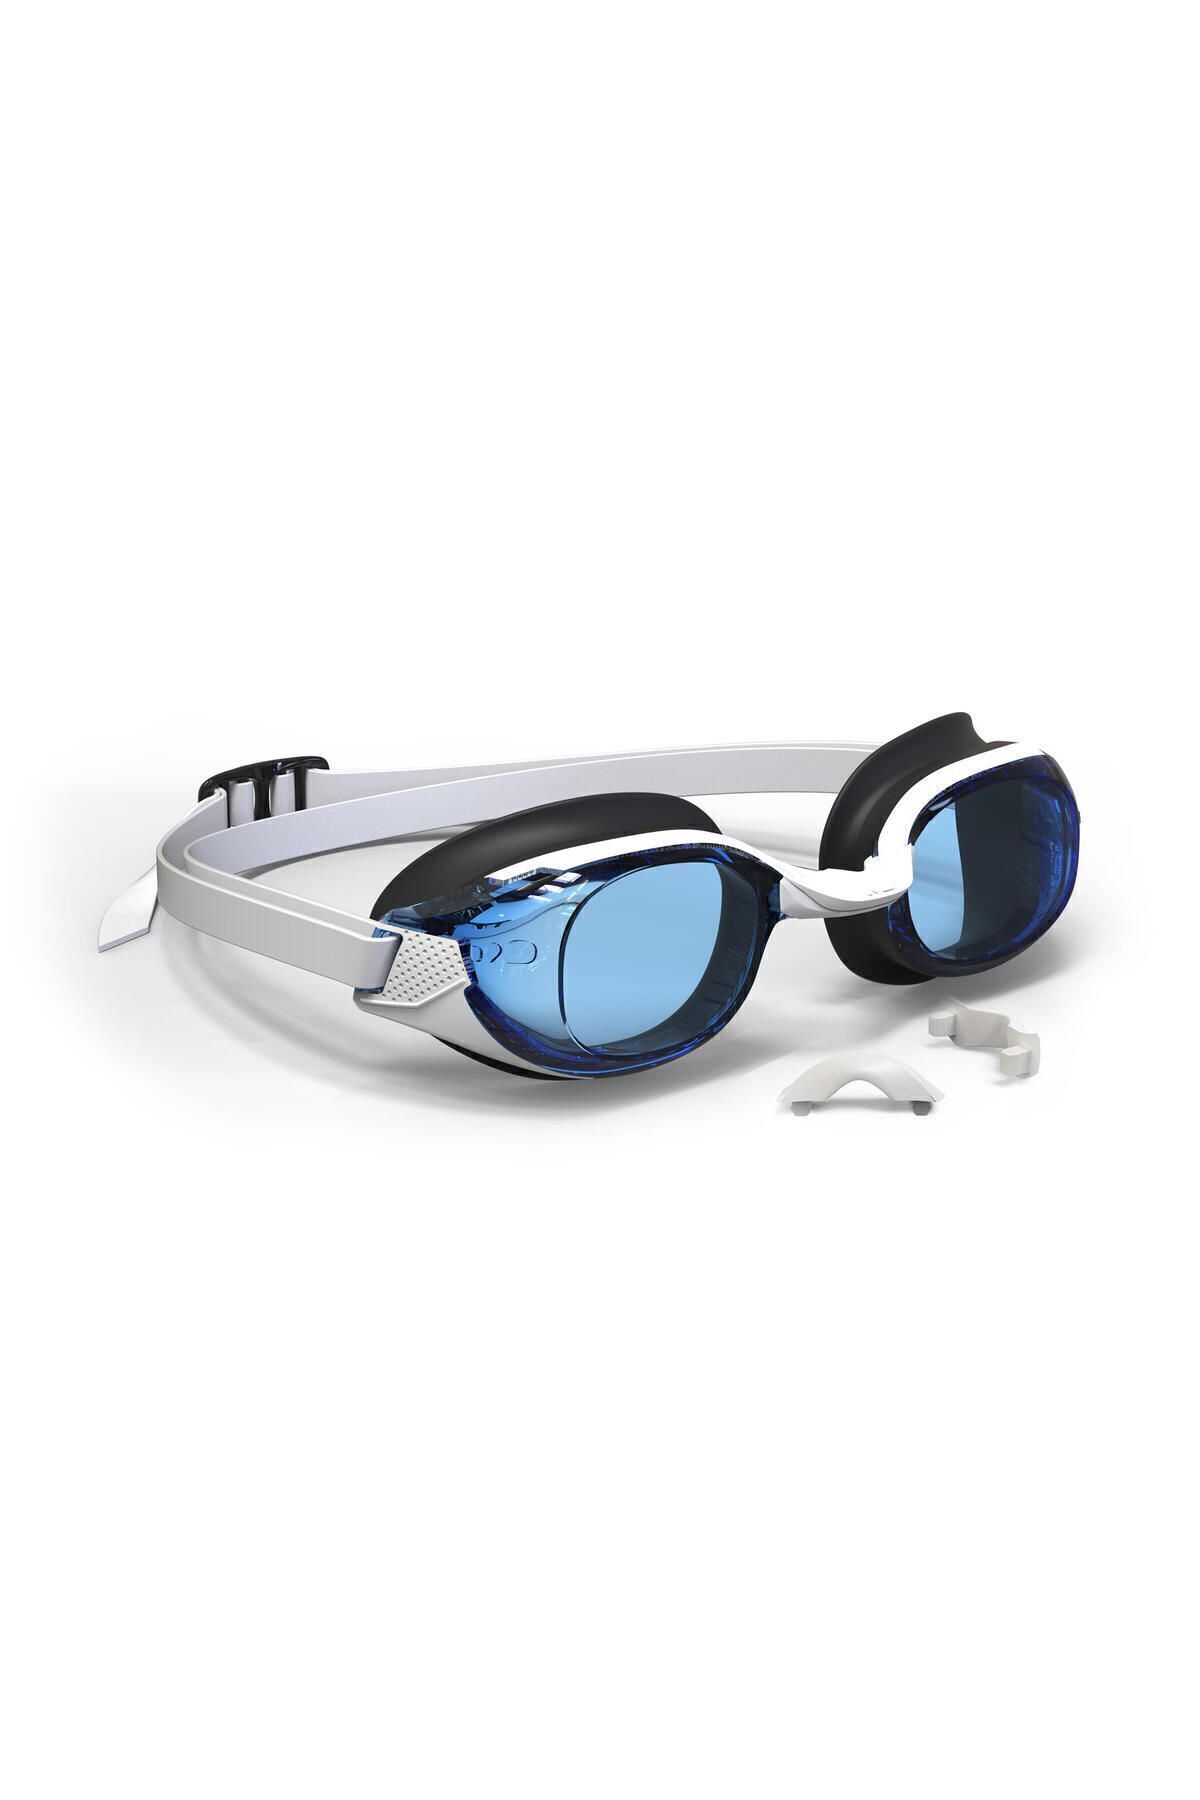 Decathlon Nabaiji Yüzücü Gözlüğü - Renkli Camlı - Mavi / Siyah / Sarı - Bfit